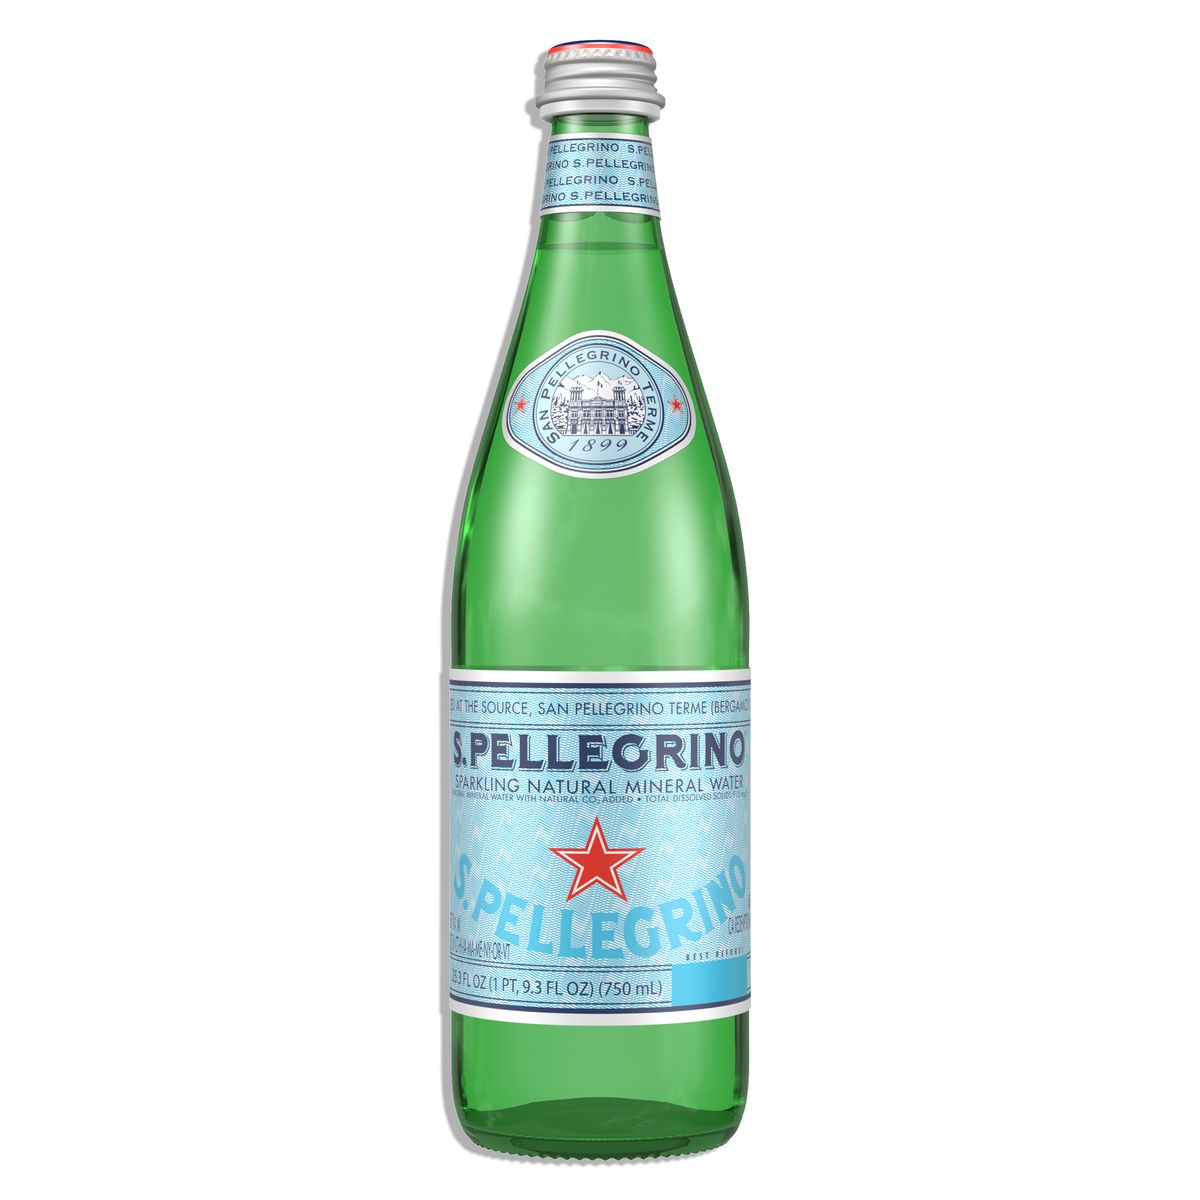 San Pellegrino 750ml bottle